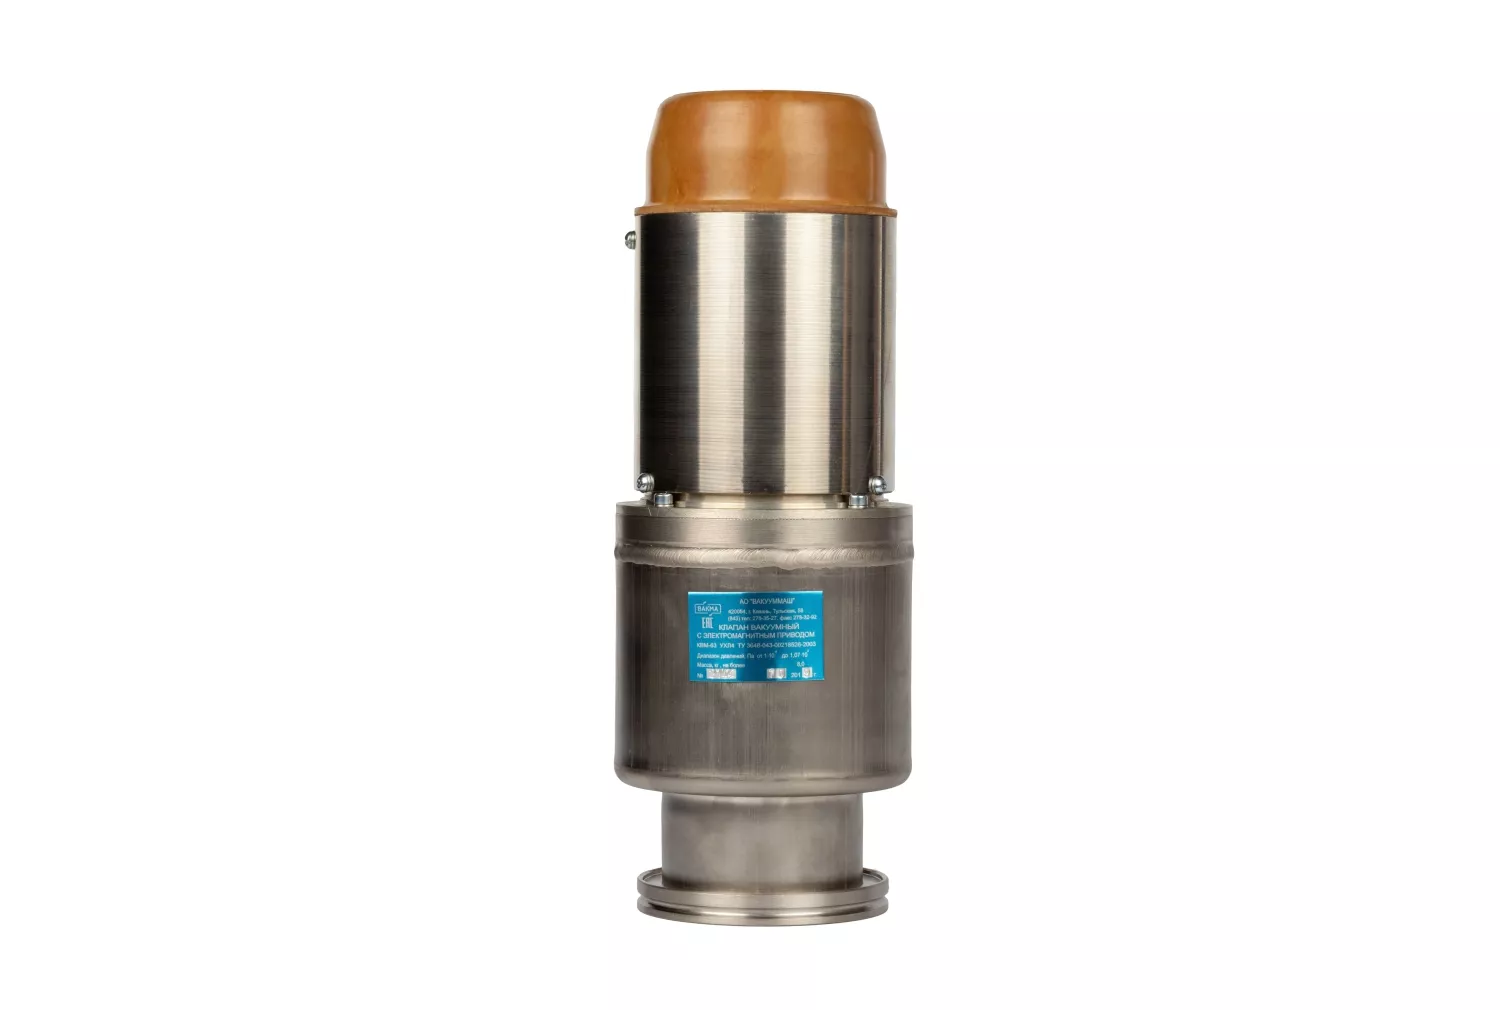 Купить в АО Вакууммаш ✓ Электромагнитный вакуумный клапан КВМ-63 ✦ узнать цены и отзывы в каталоге